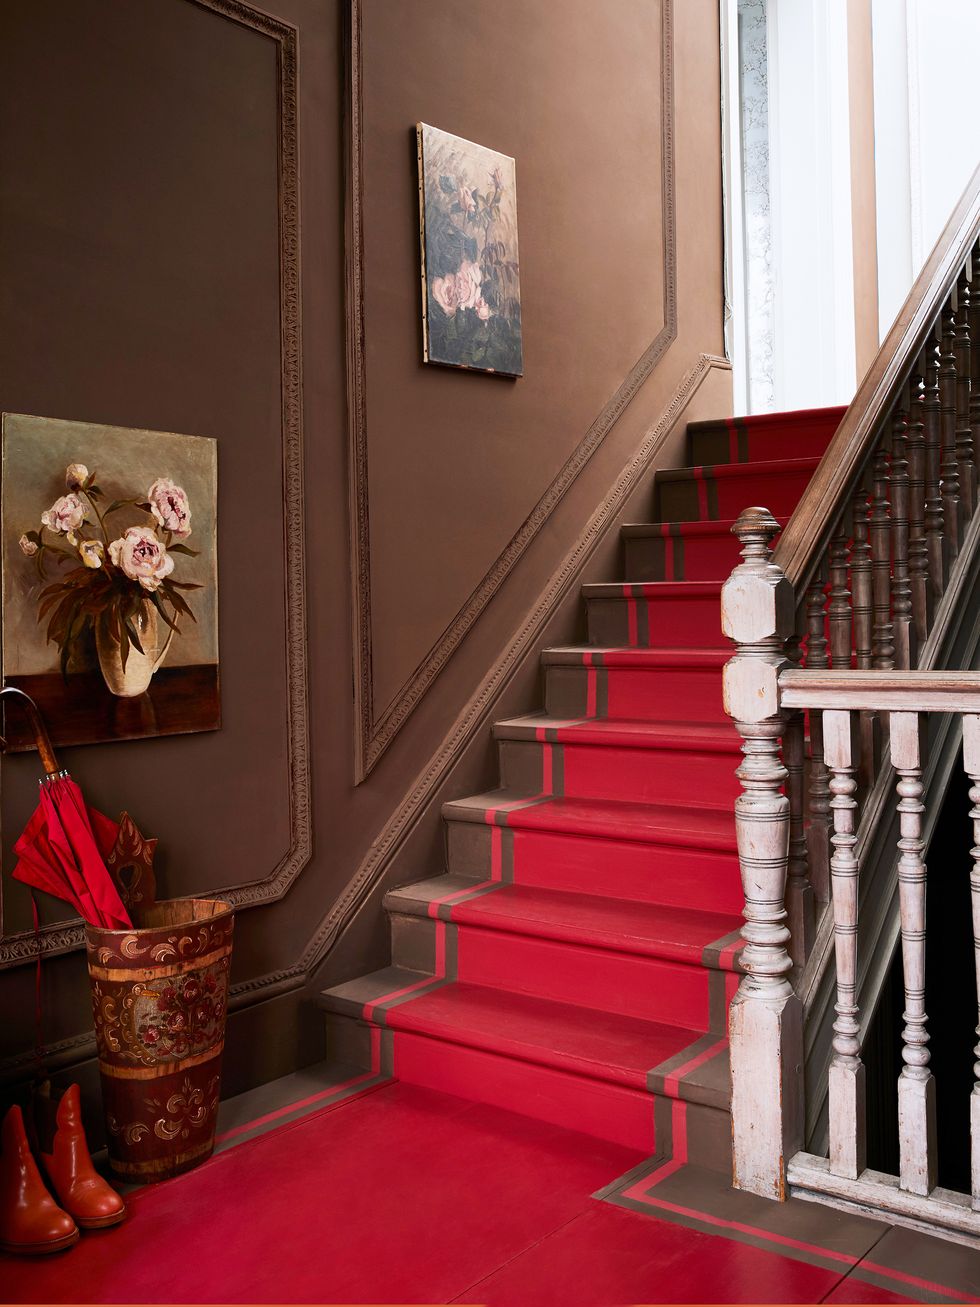 hình ảnh các bậc cầu thang được sơn màu đỏ đậm